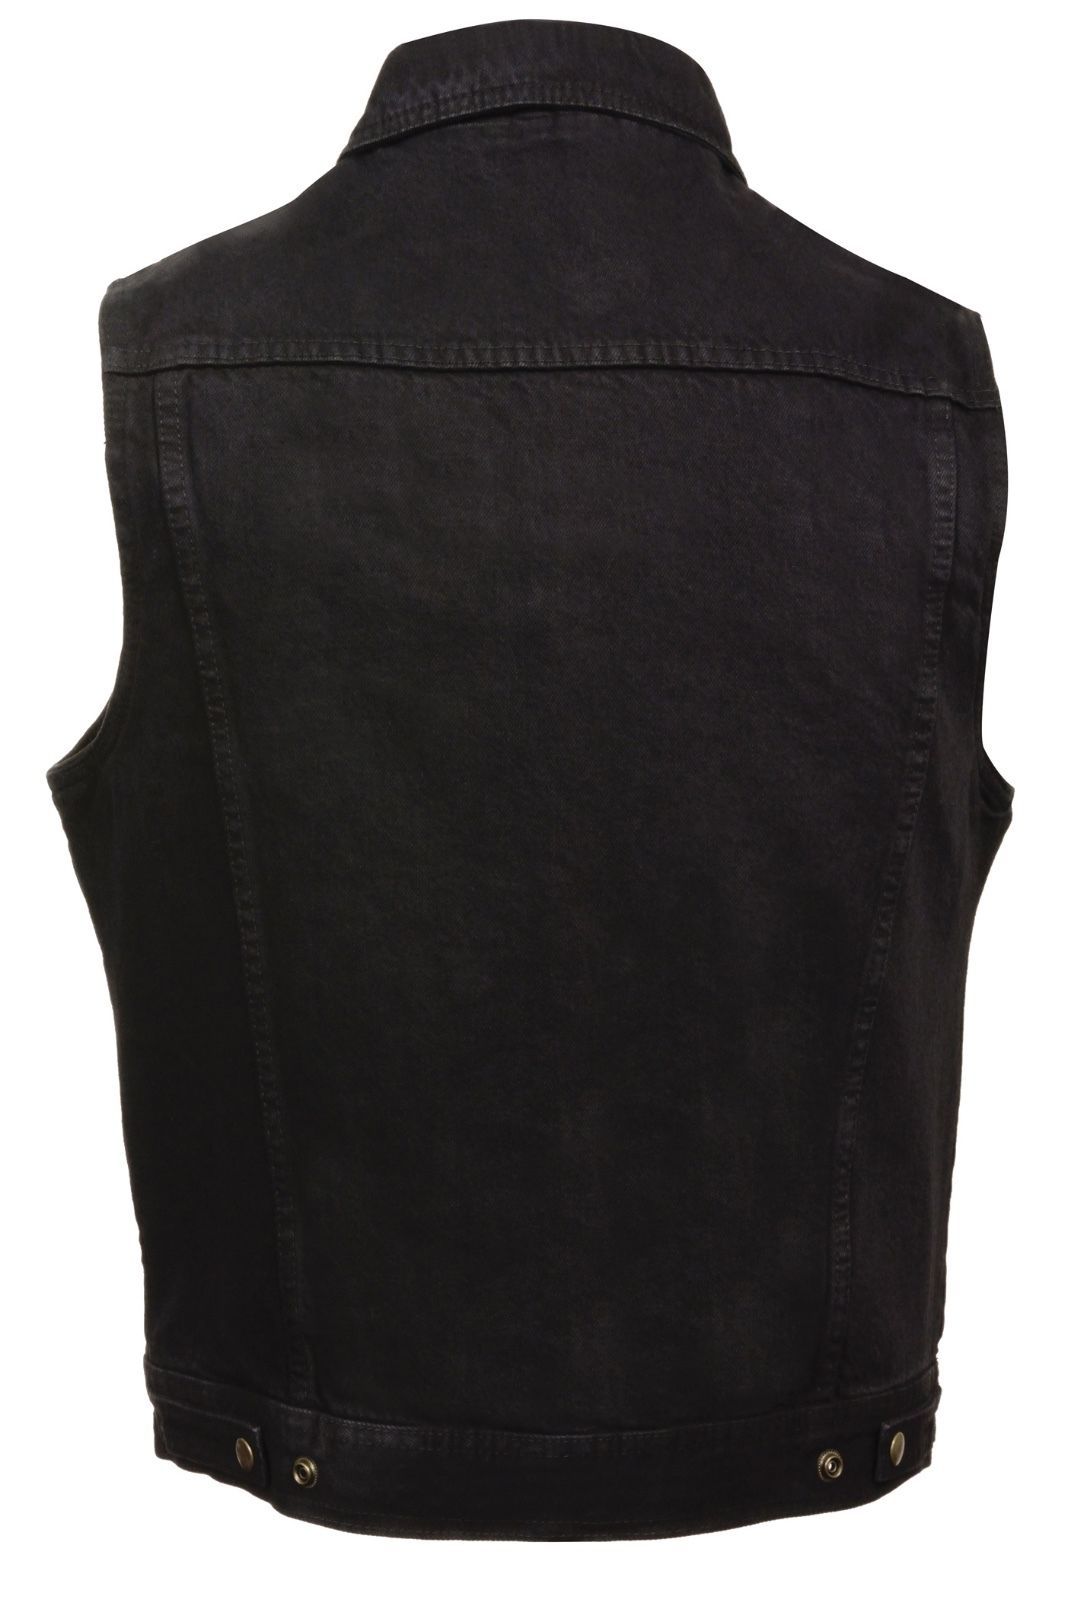 Black Denim Biker Vest w/Gun Pockets By Milwaukee Leather